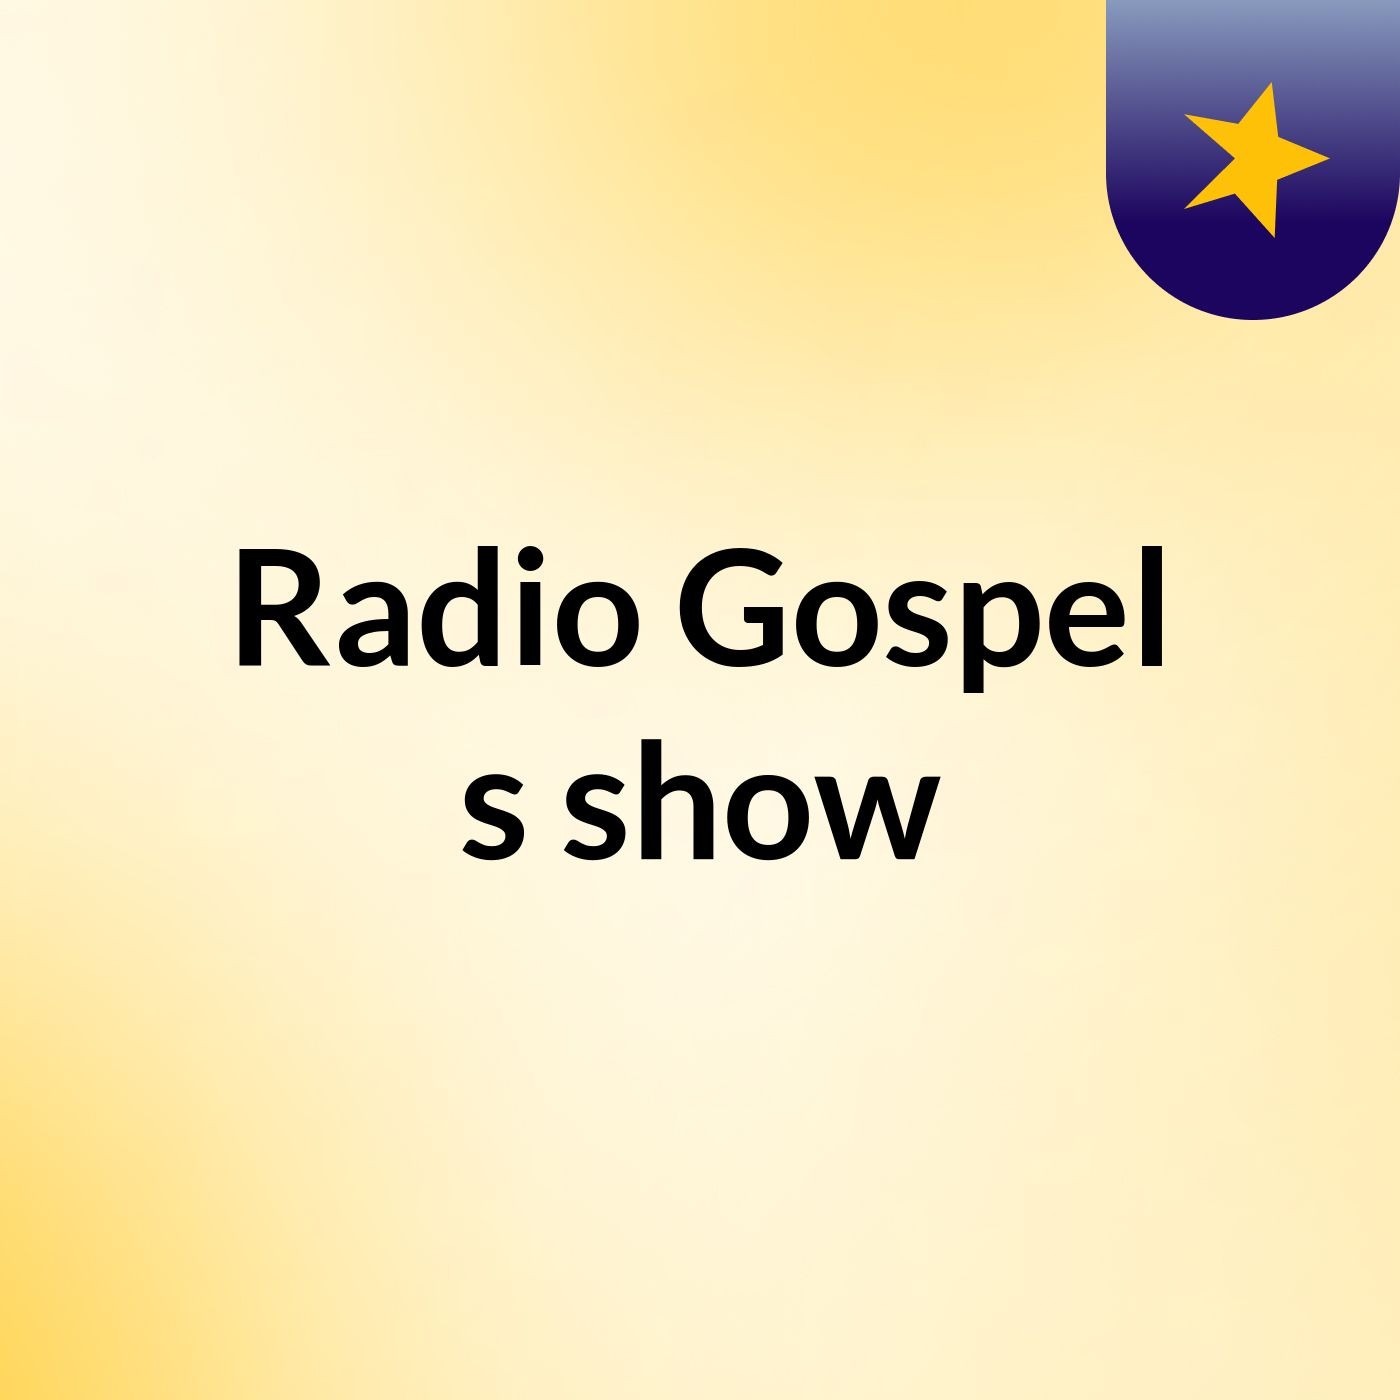 Radio Gospel's show